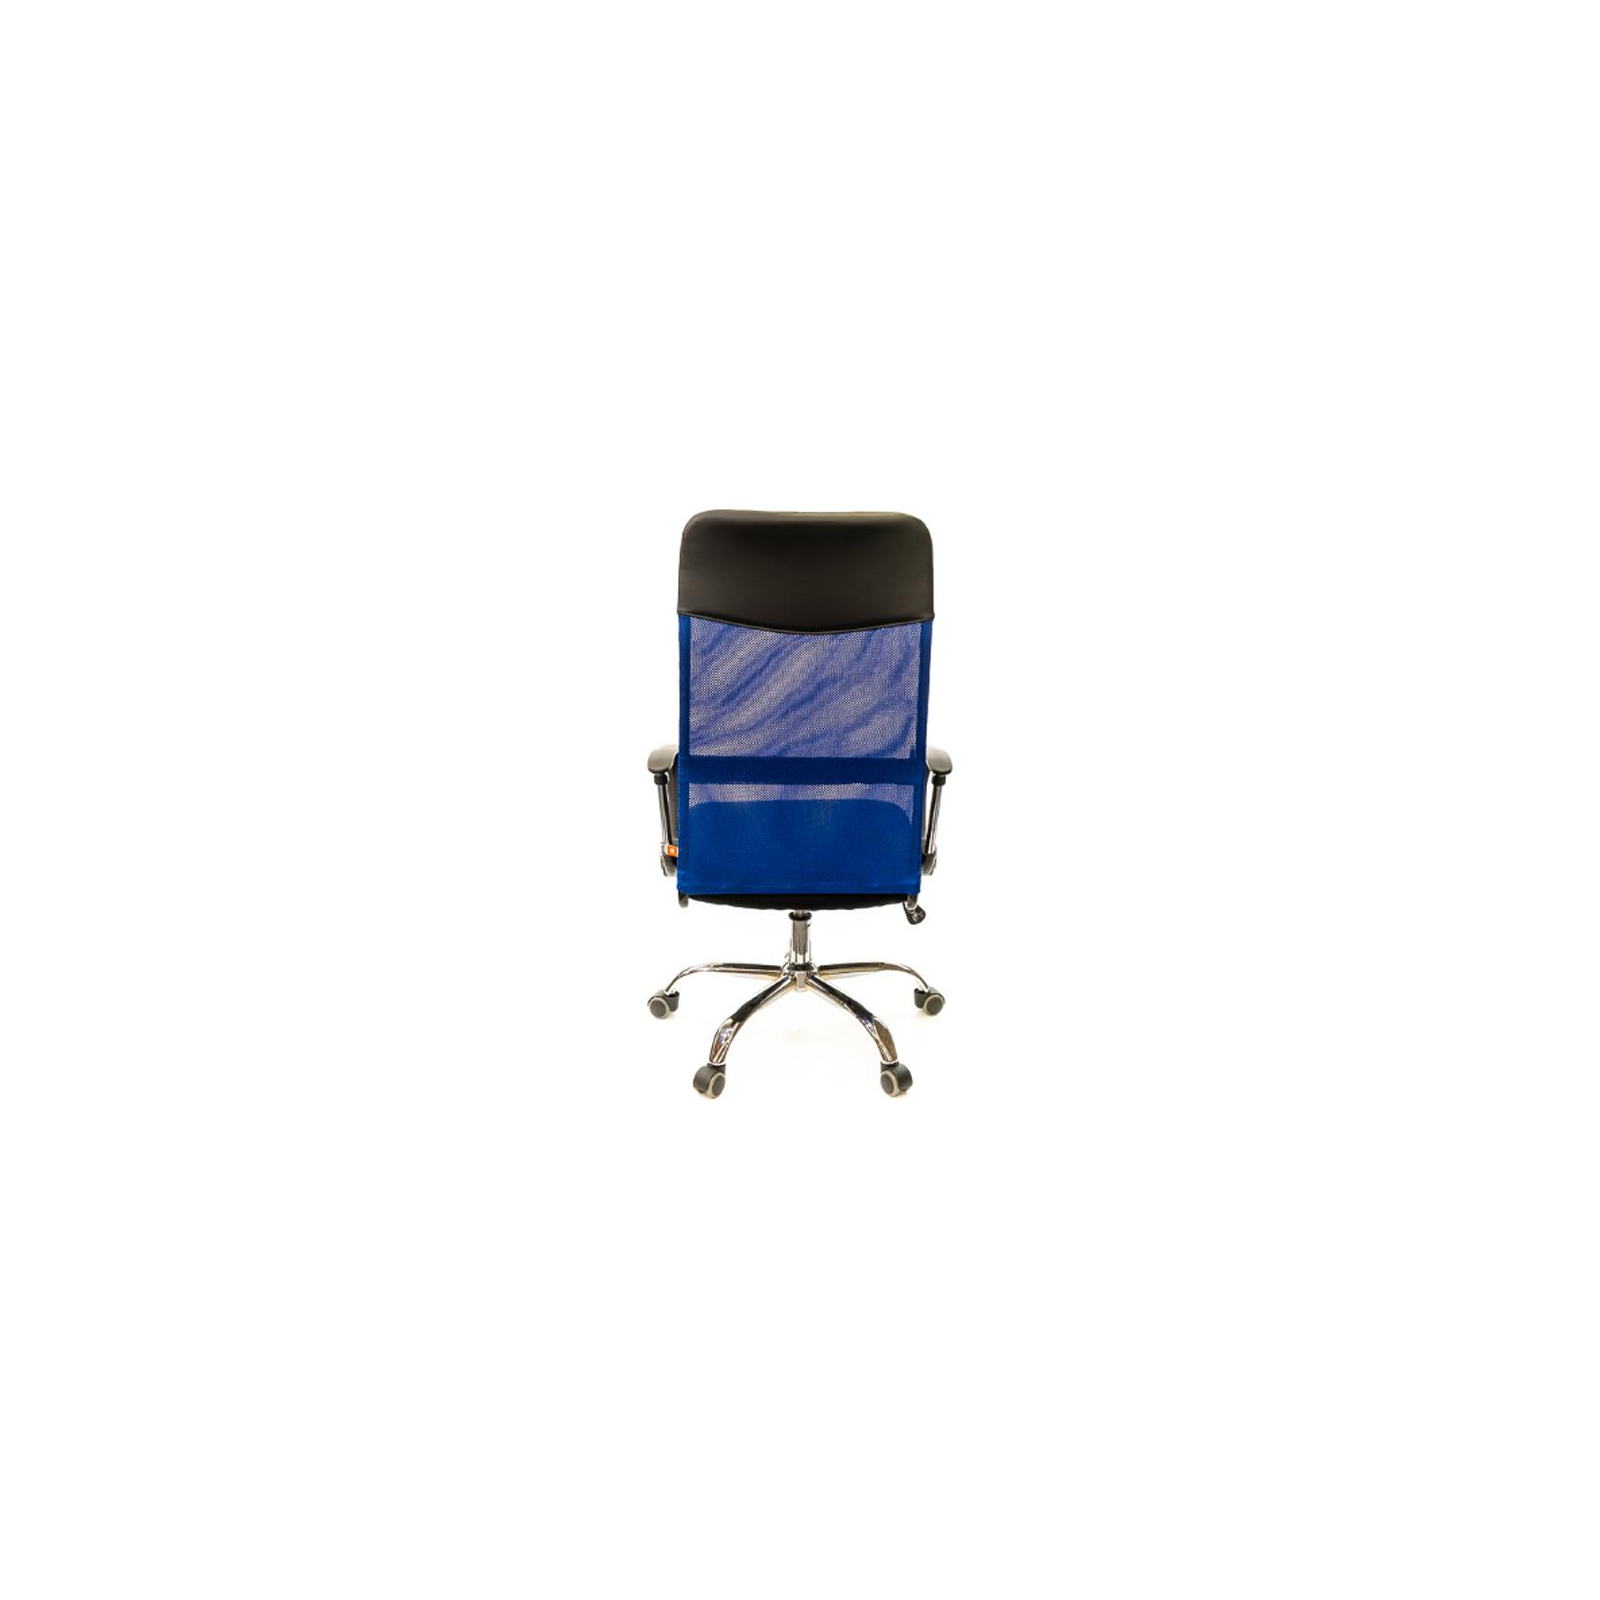 Офисное кресло Аклас Гилмор CH TILT Синее (09559) изображение 4